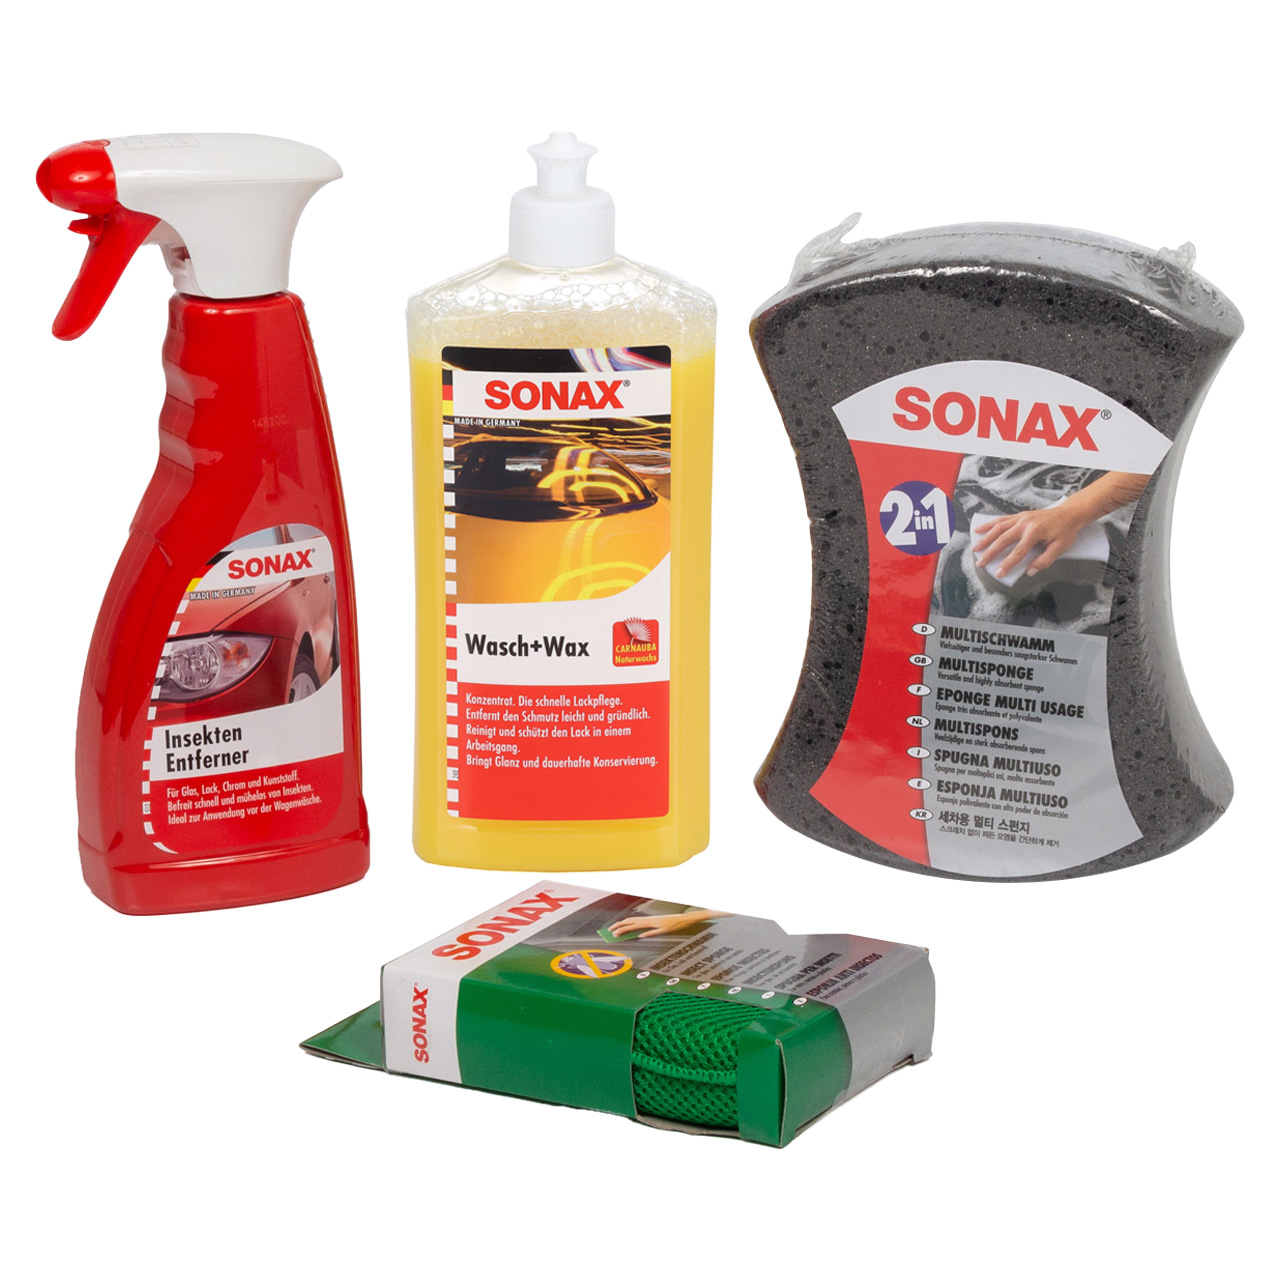 SONAX Autoshampoo Wasch&Wax + Multischwamm + ApplikationsSchwamm